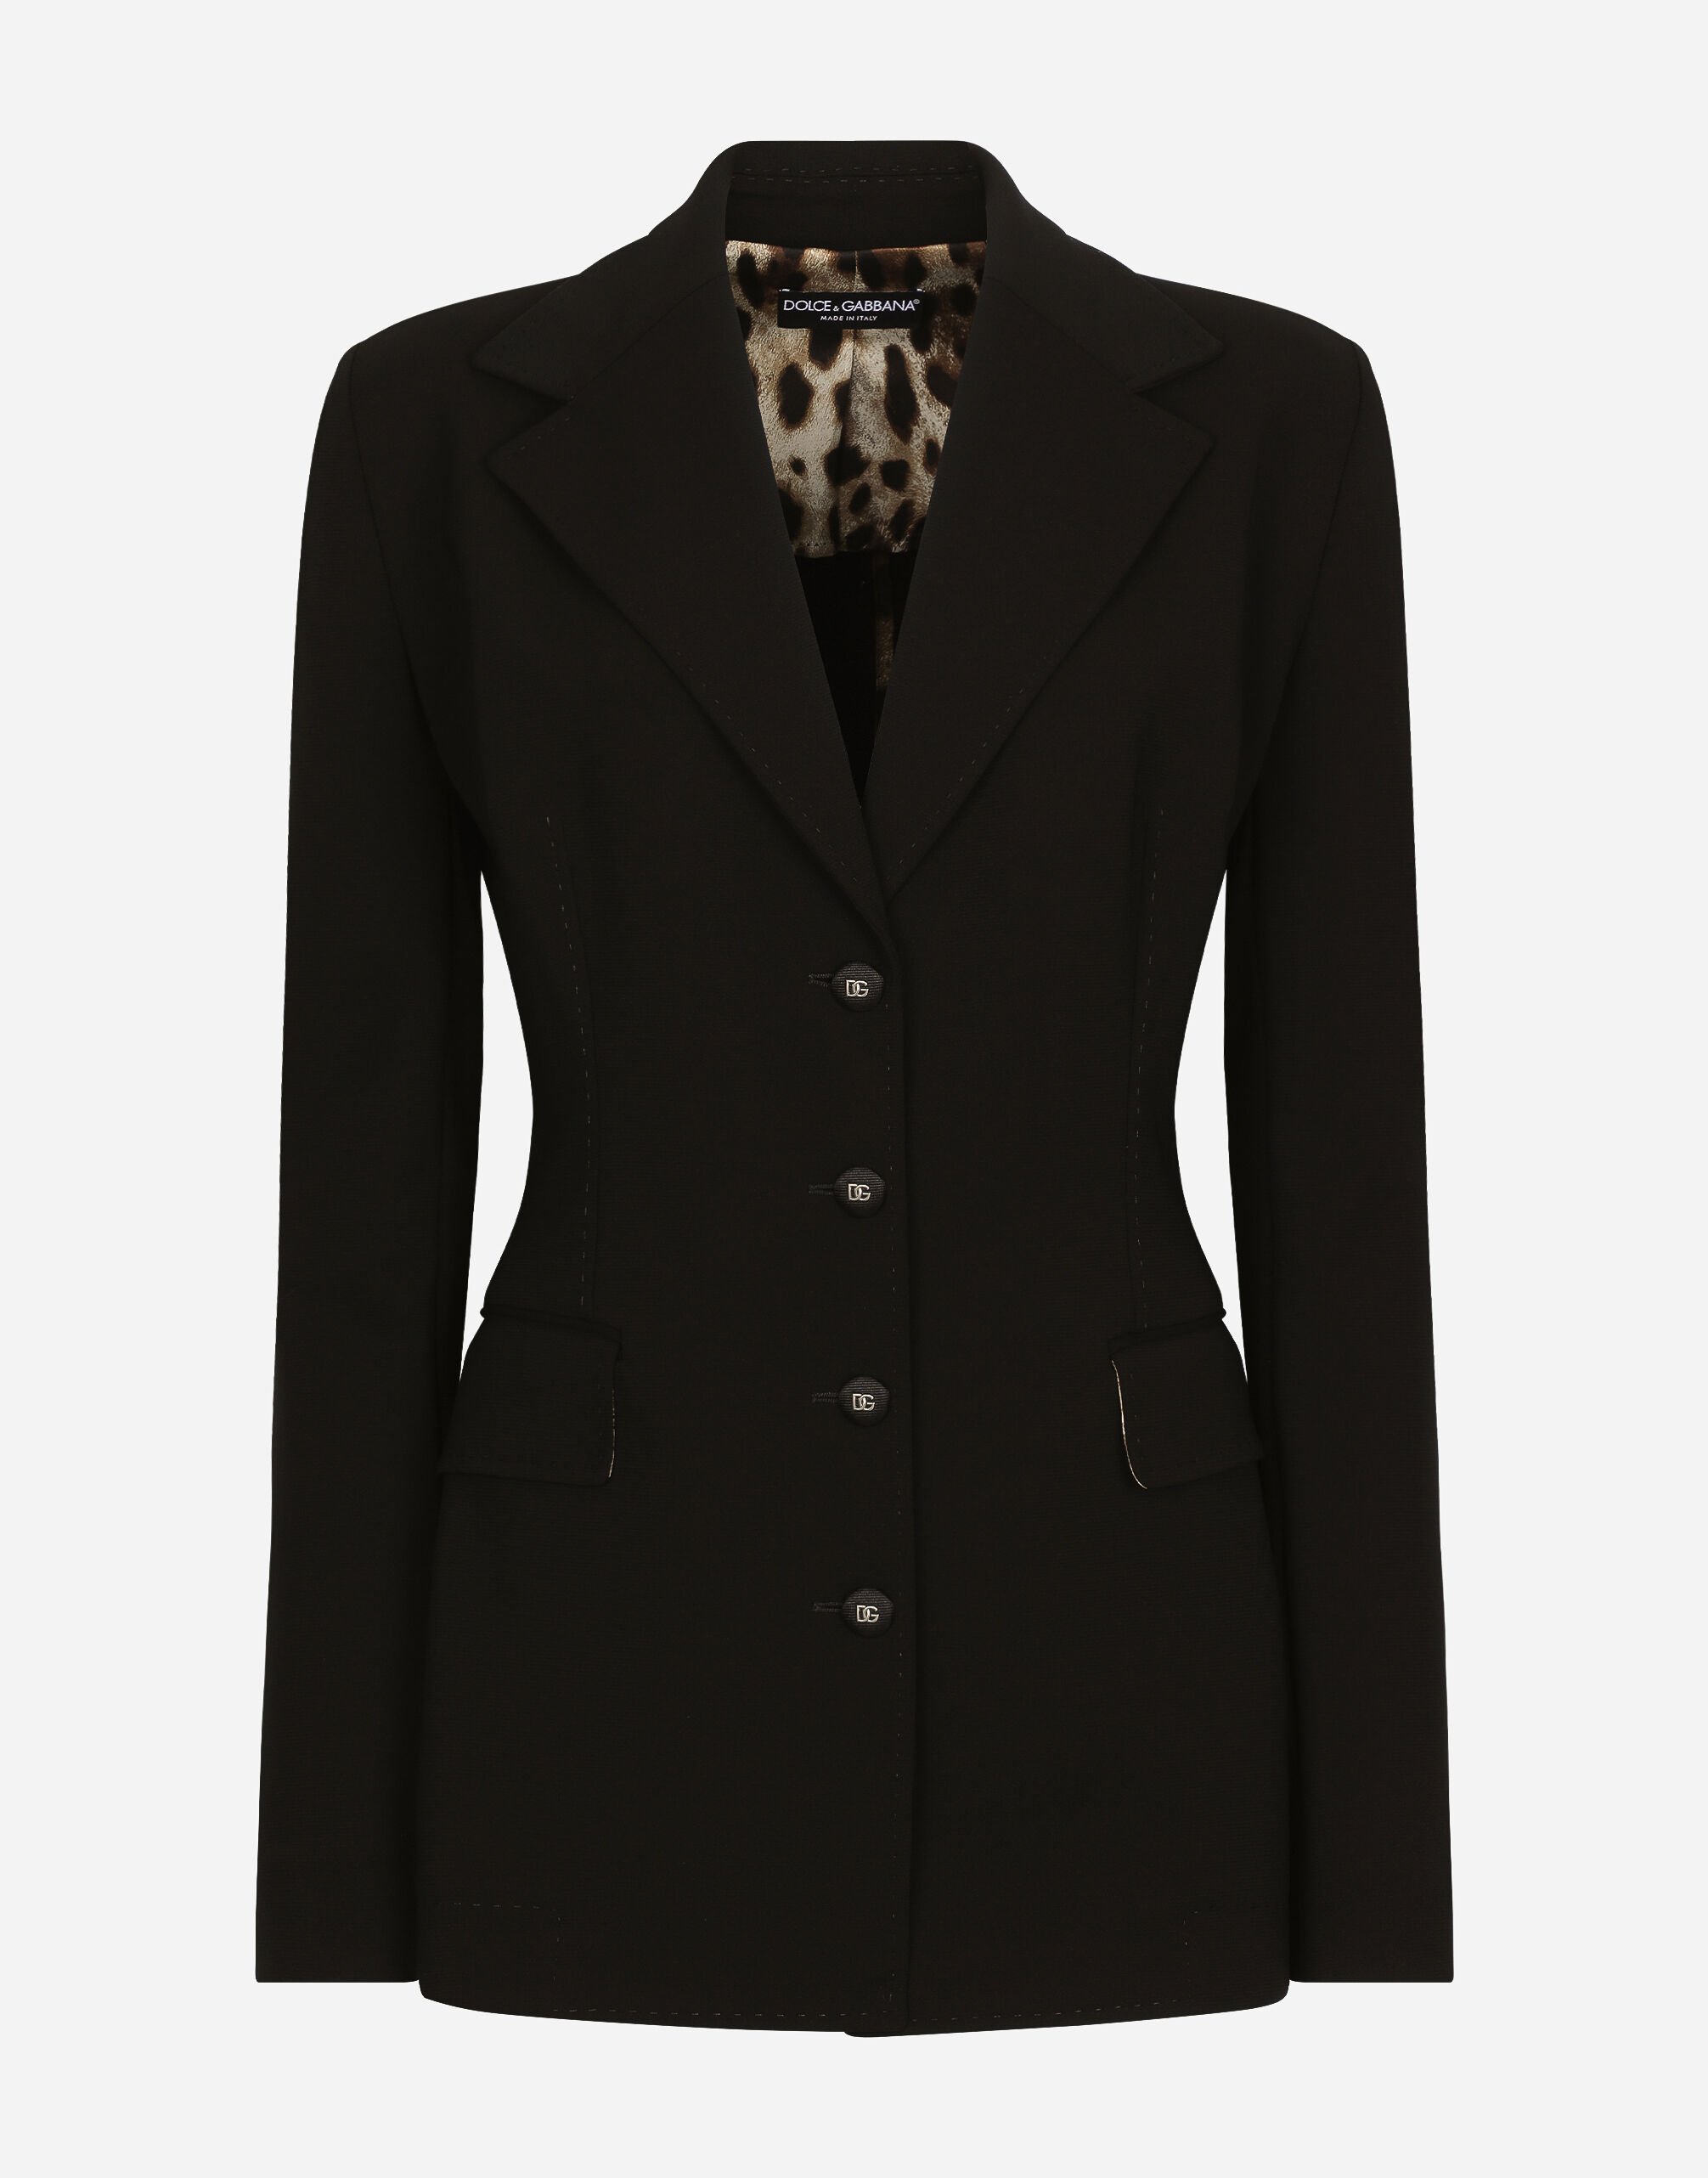 Dolce & Gabbana Double-breasted Turlington jacket in jersey Milano rib Black F29MCTFUBE7